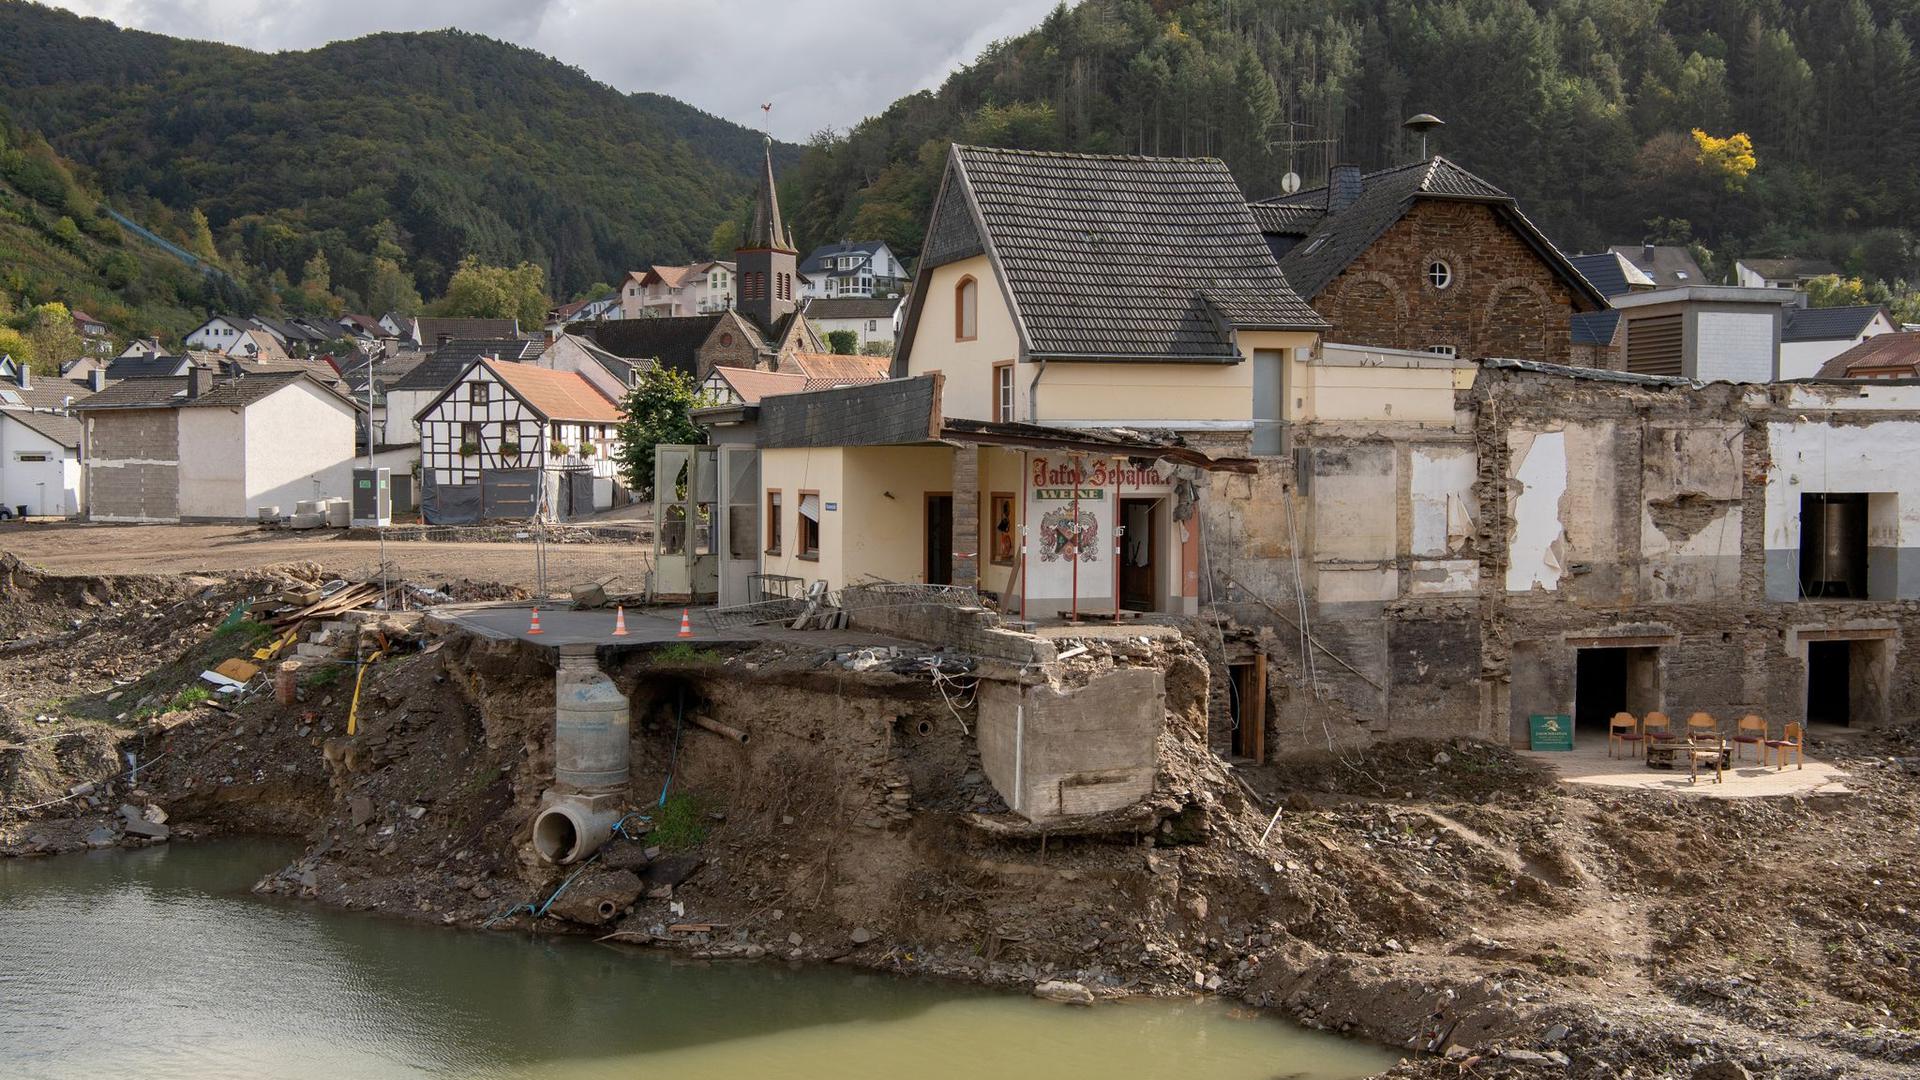 Weitgehend zerstört präsentiert sich der Ortskern von Rech im Ahrtal drei Monate nach der Flutkatastrophe vom Juli.